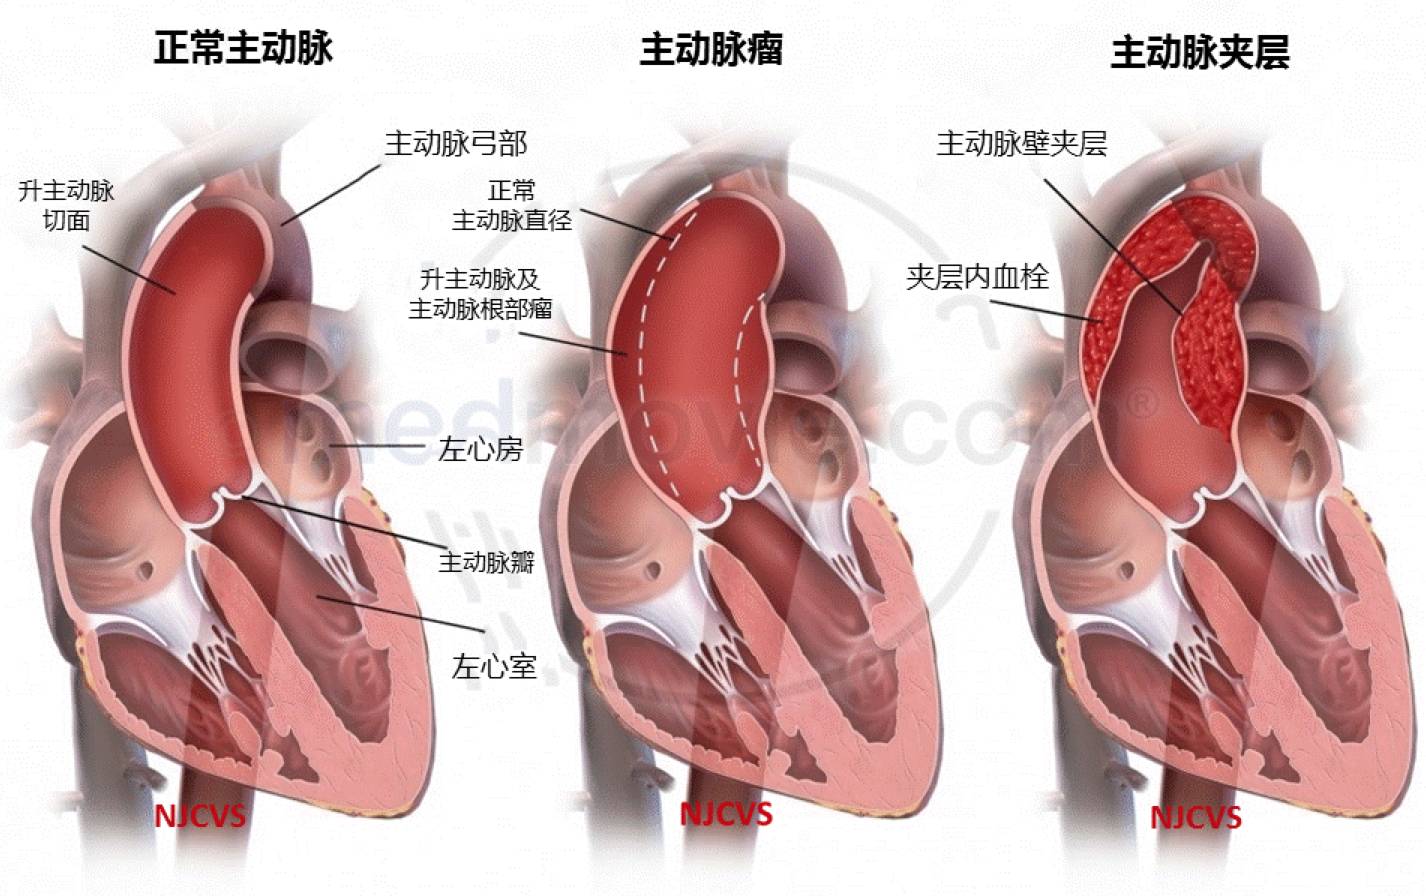 球囊扩张手术治疗右肺下动脉完全闭塞的大动脉炎